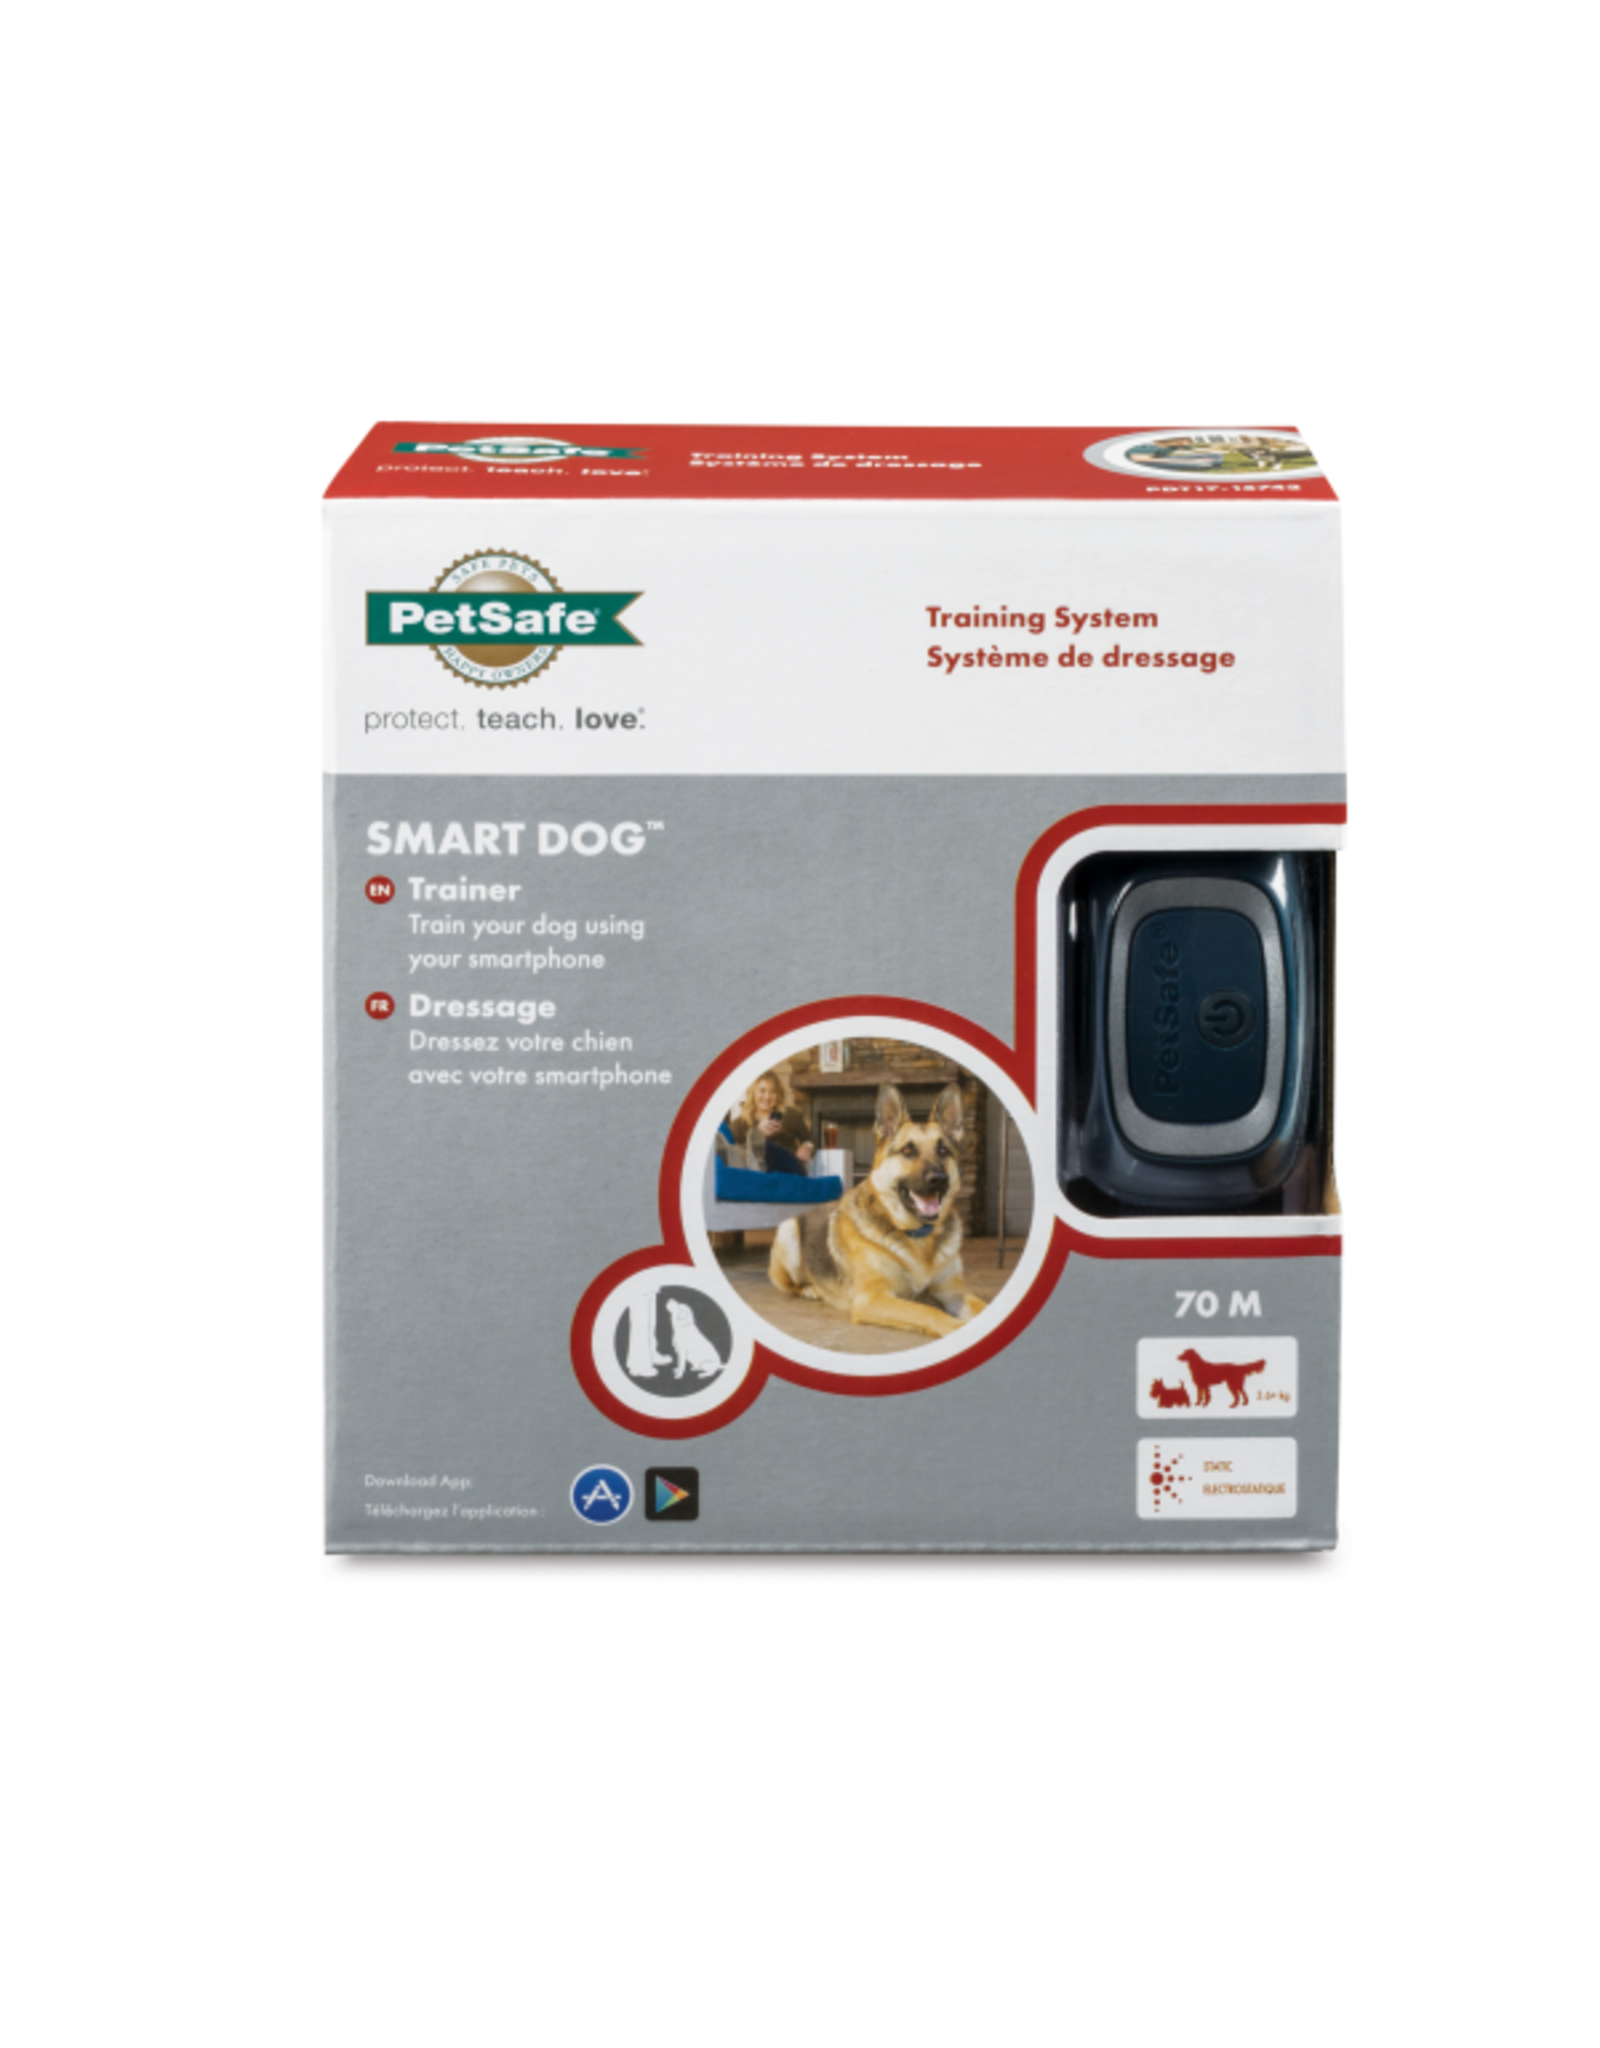 PetSafe 75 M Smart Dog Remote Trainer 15 Levels